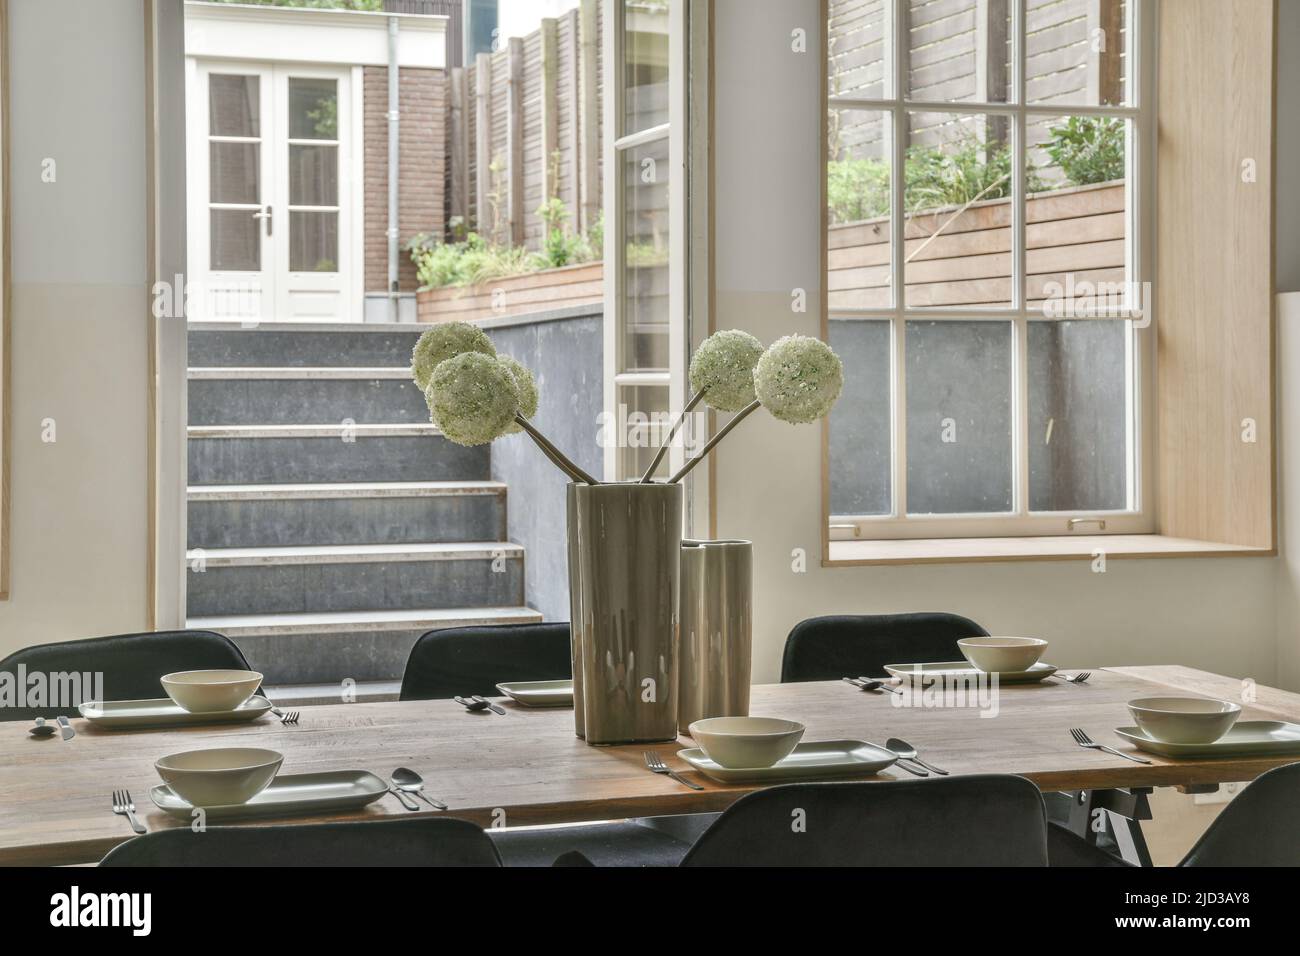 Salle à manger spacieuse et lumineuse avec vase élégant sur la table Banque D'Images